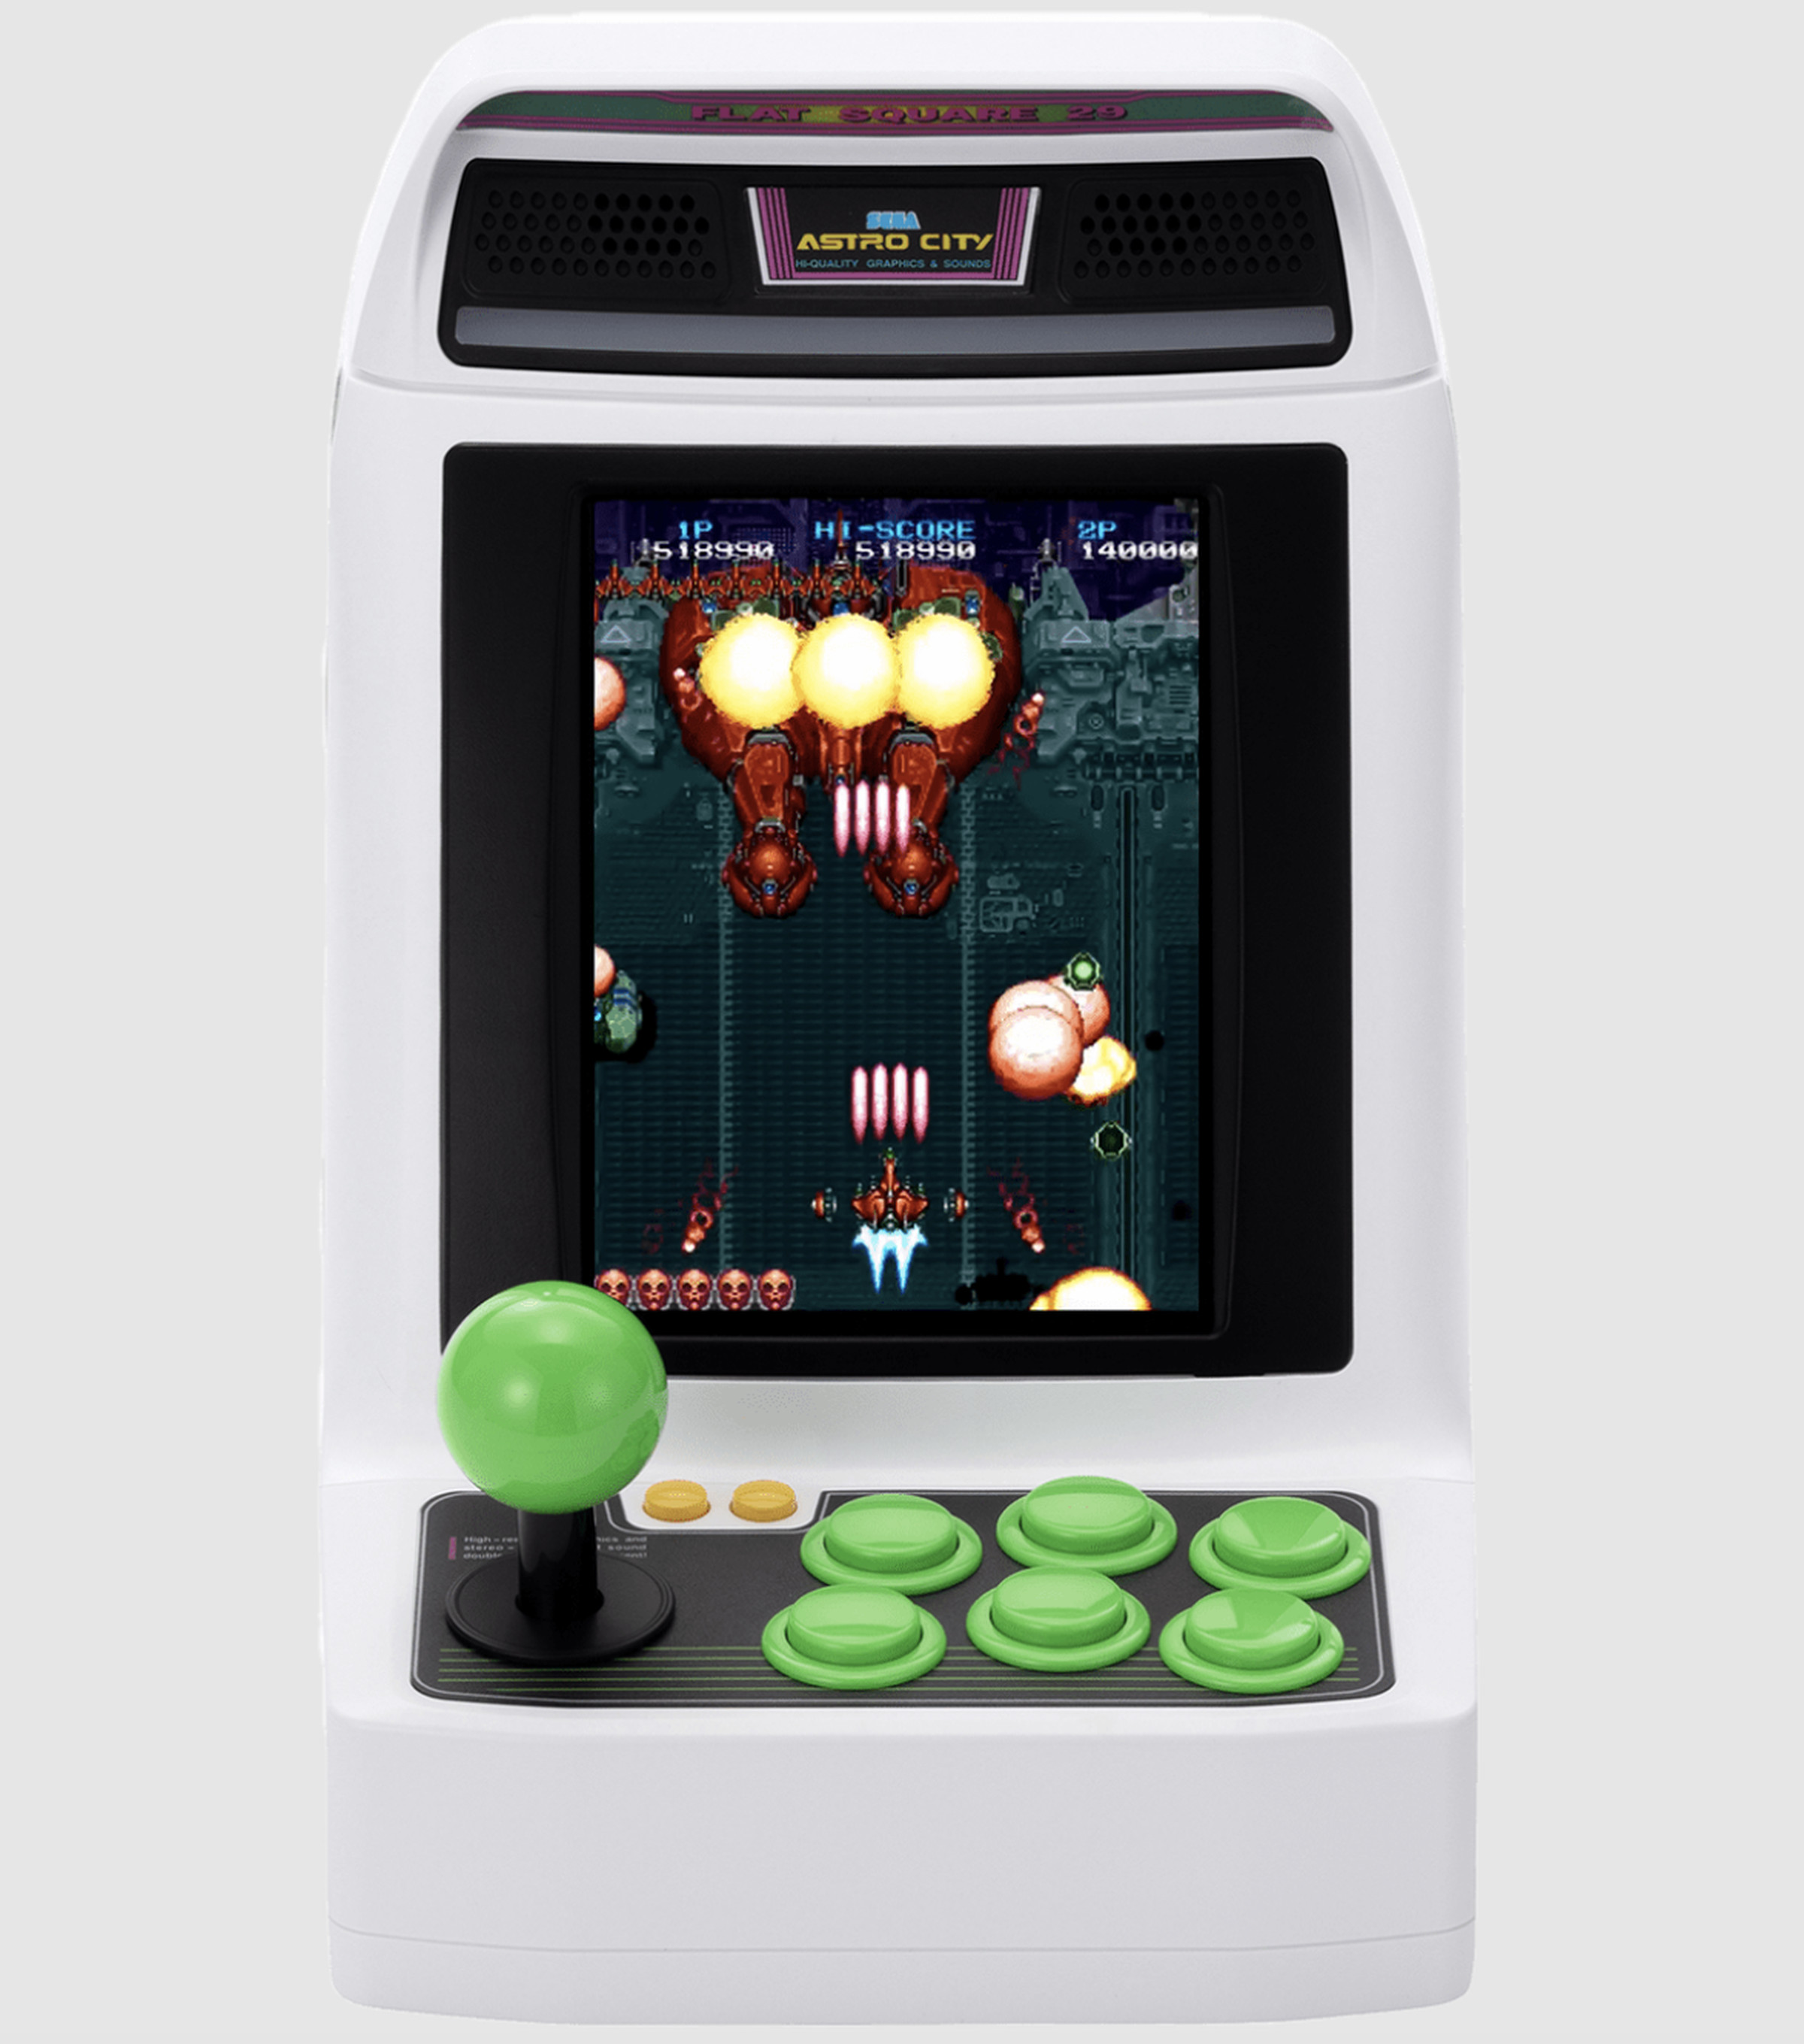 Astro City Mini V arcade ünitesinin bir fotoğrafı.